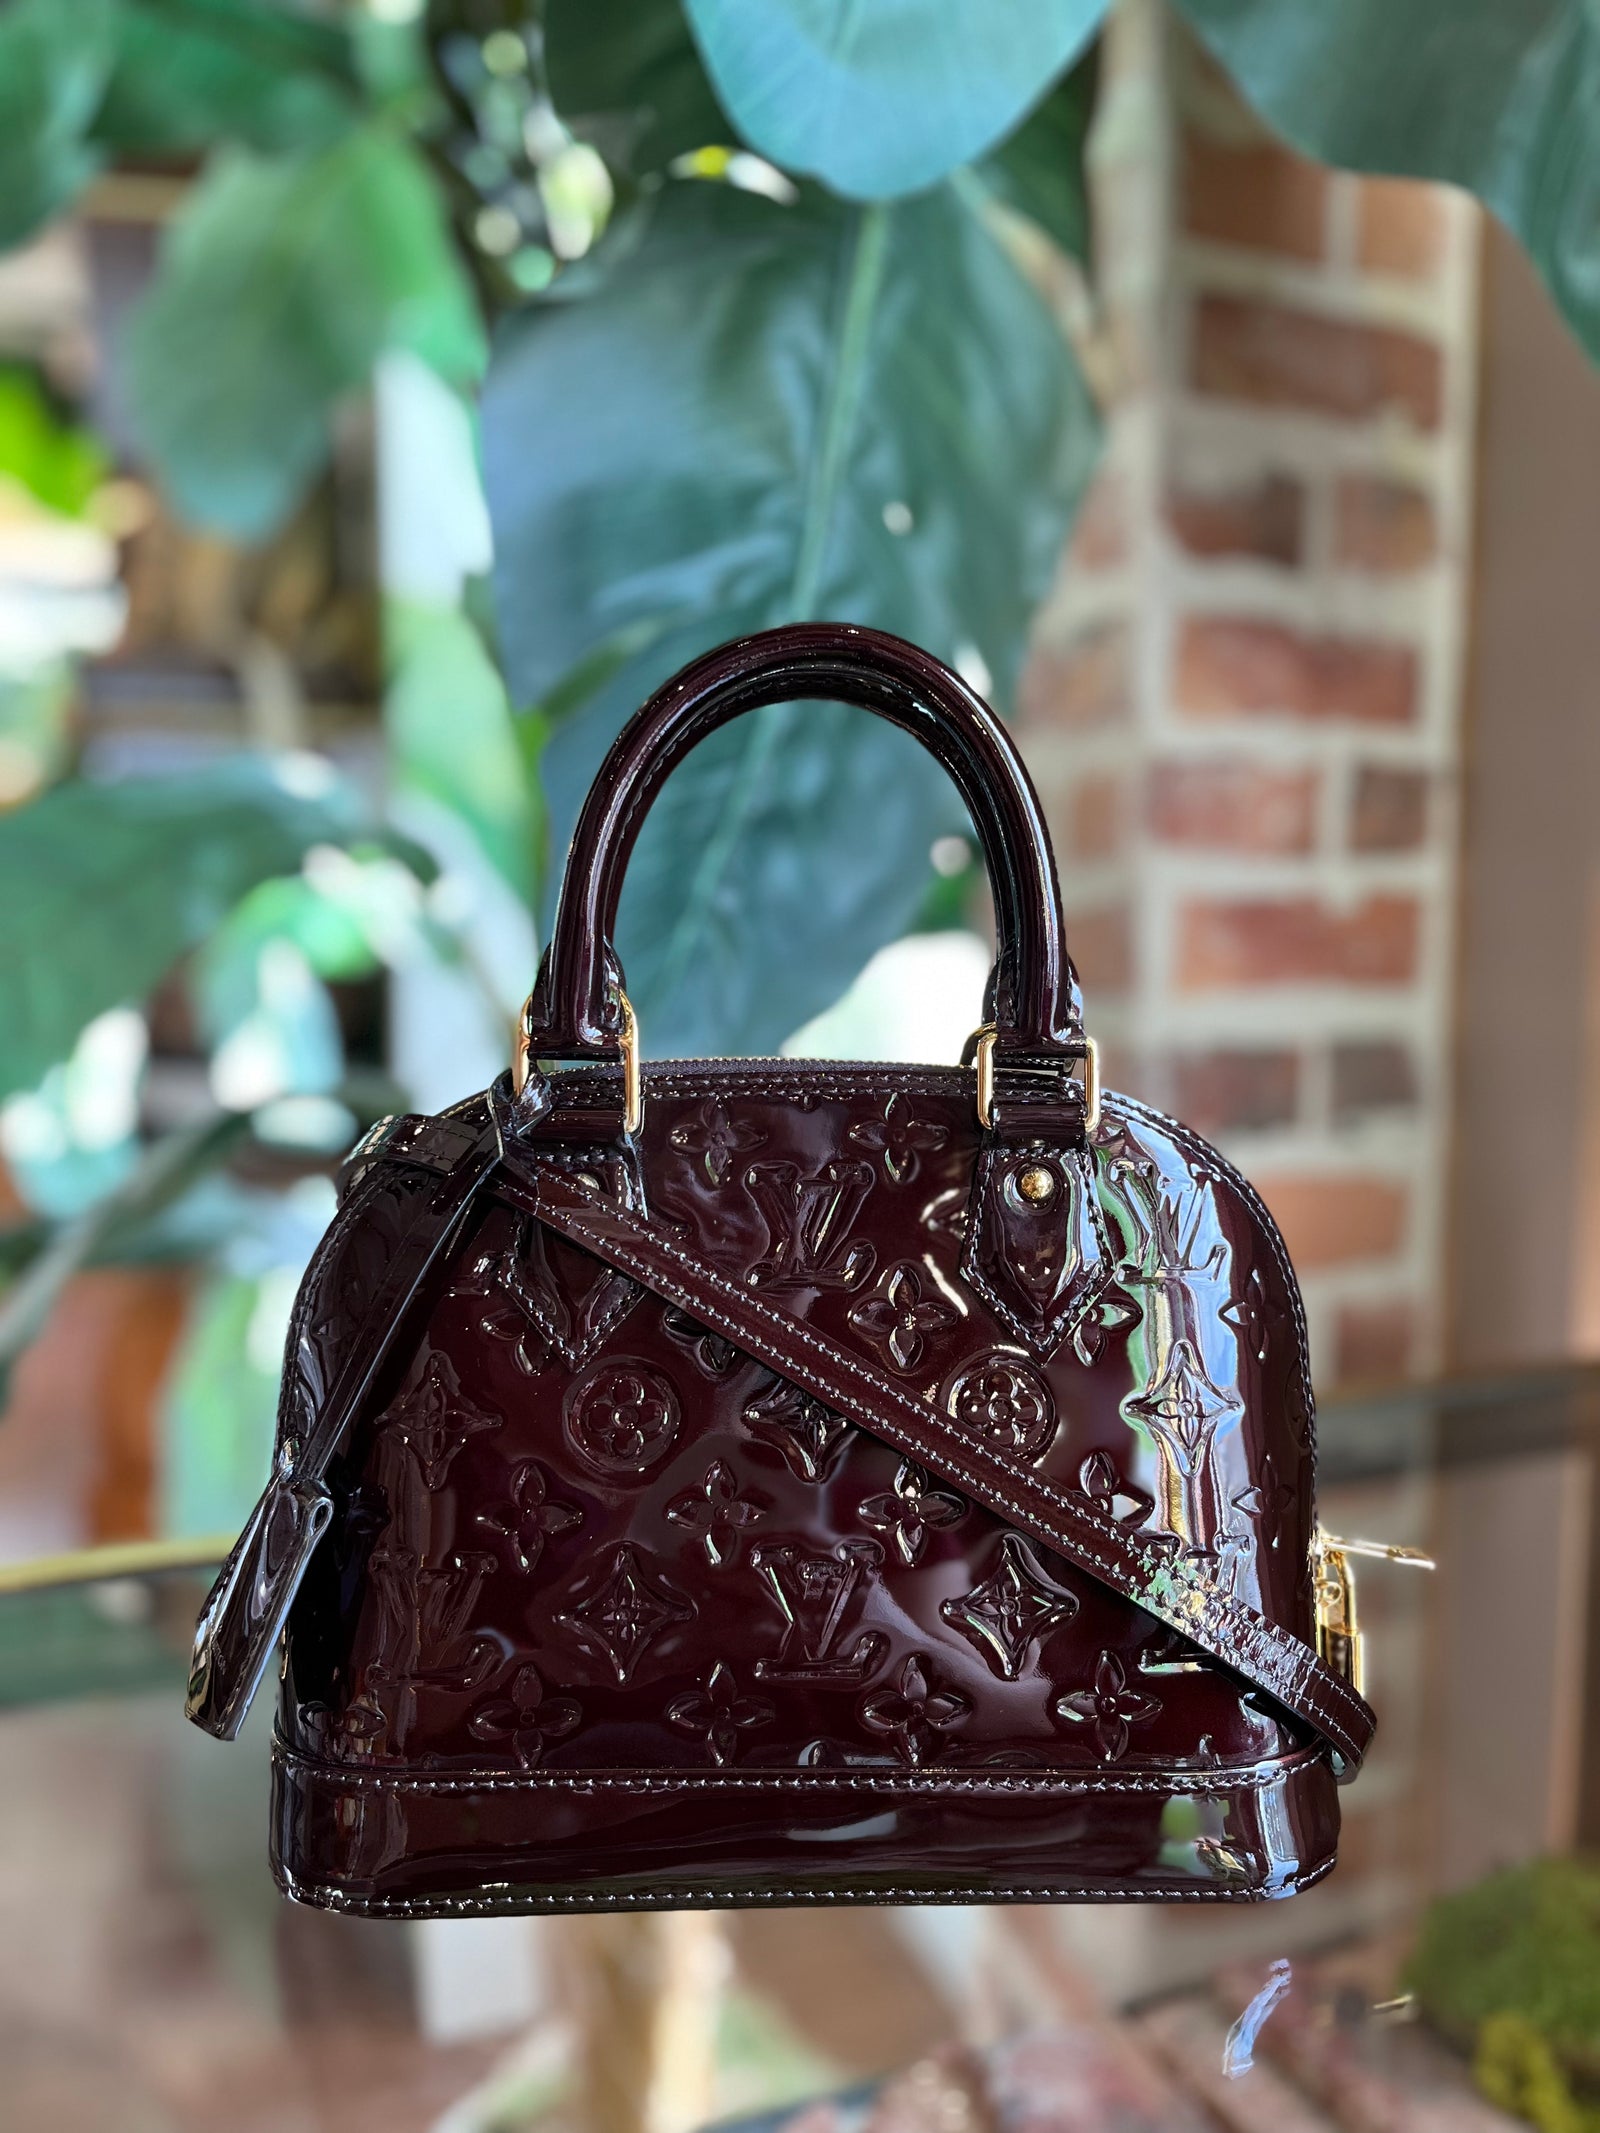 louis vuitton alma small model handbag in black patent epi leather, Black  Louis Vuitton Damier Graphite Porte Documents Voyage PM Business Bag